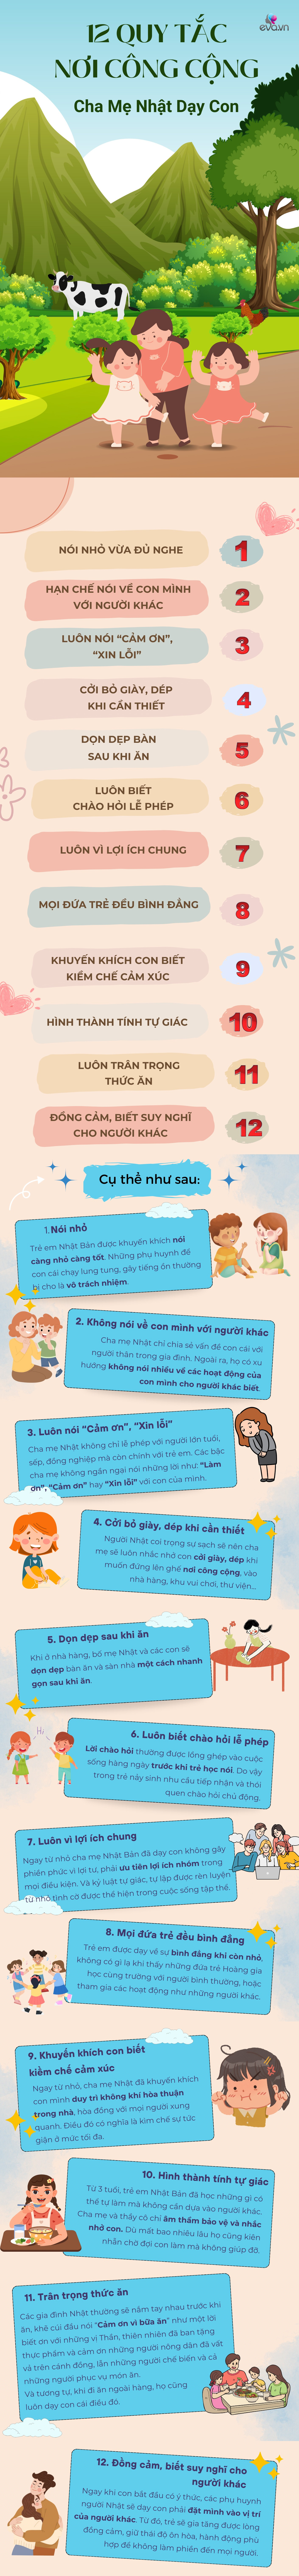 Người Nhật nổi tiếng lịch sự, đây là 12 quy tắc nơi công cộng mẹ Nhật dạy con - 1